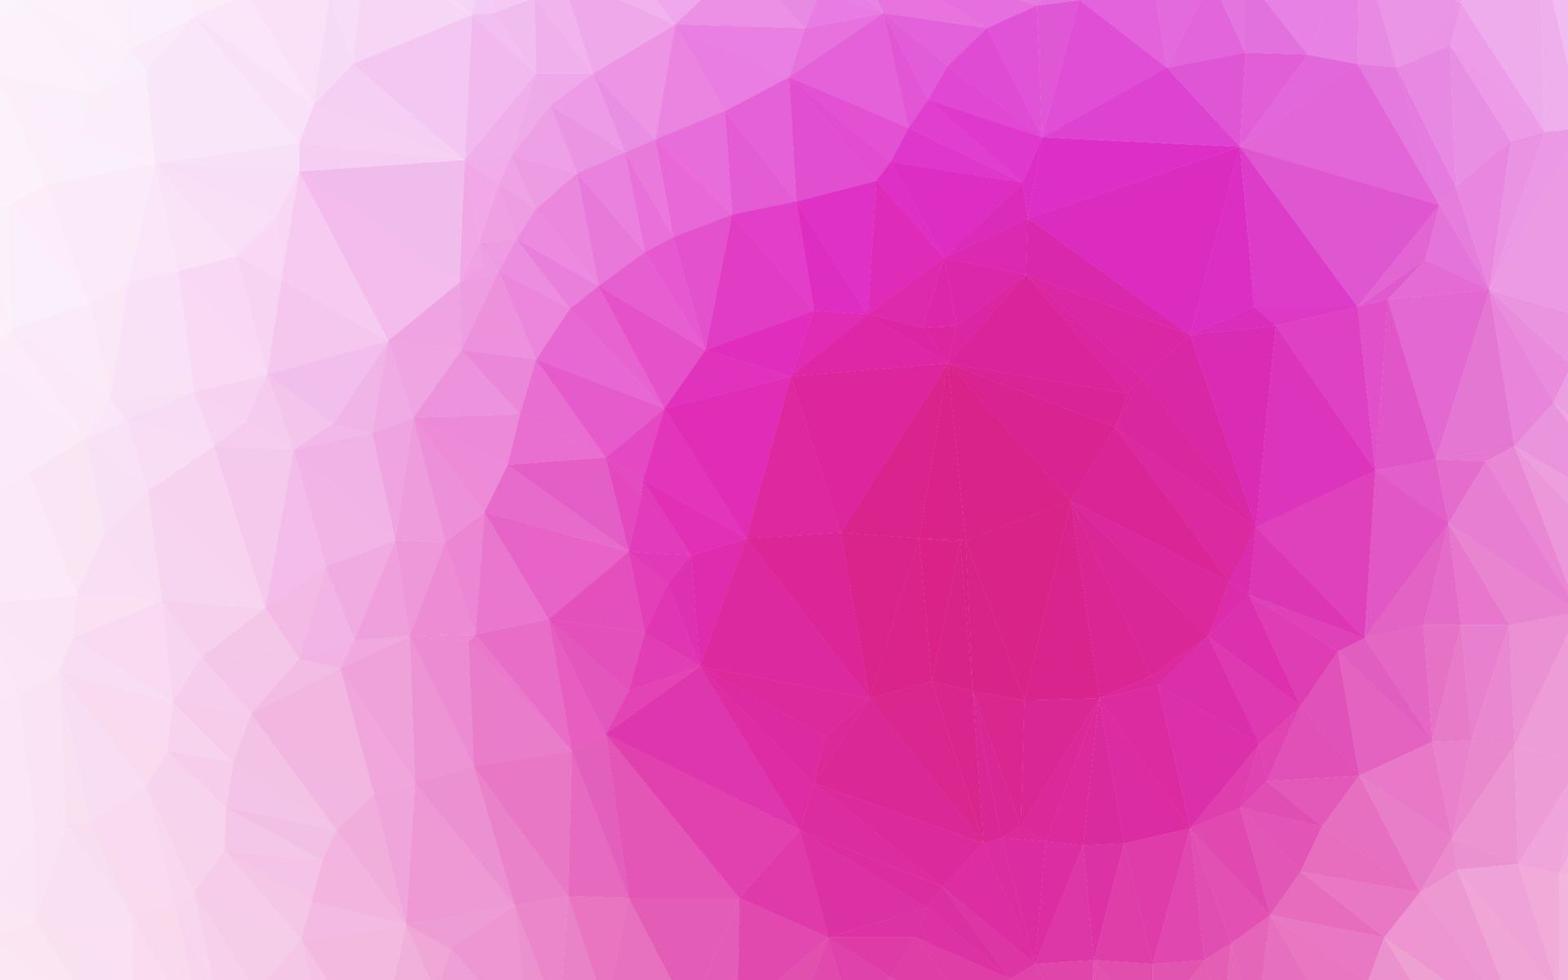 sfondo astratto poligono vettoriale rosa chiaro.